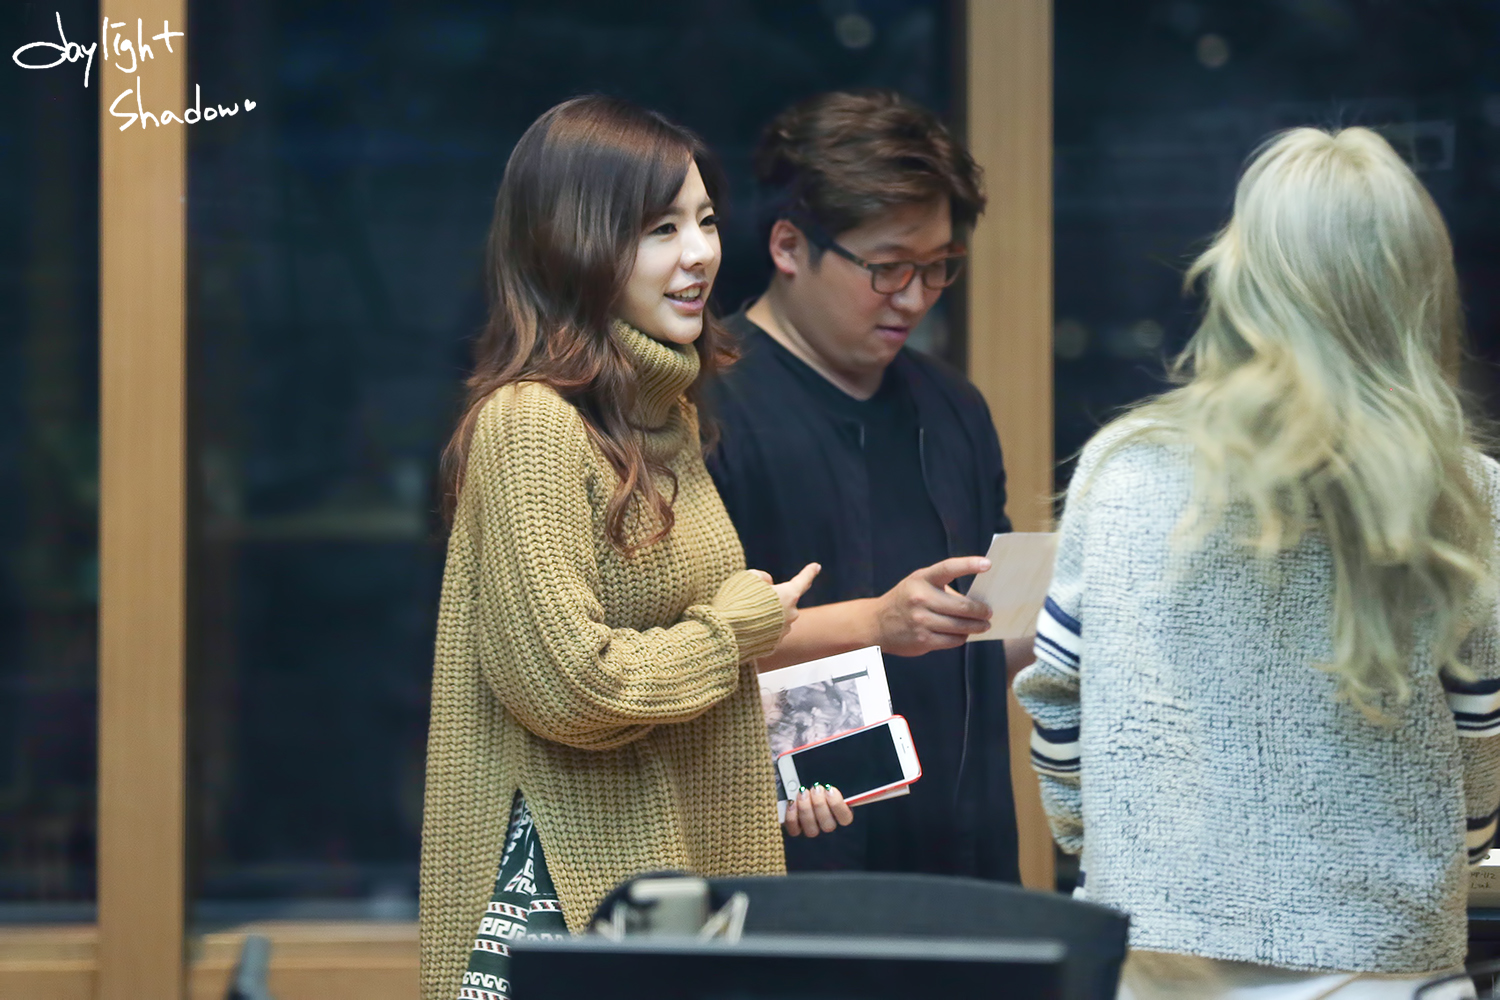 [OTHER][06-02-2015]Hình ảnh mới nhất từ DJ Sunny tại Radio MBC FM4U - "FM Date" - Page 32 256DA93F56A0B34727582B